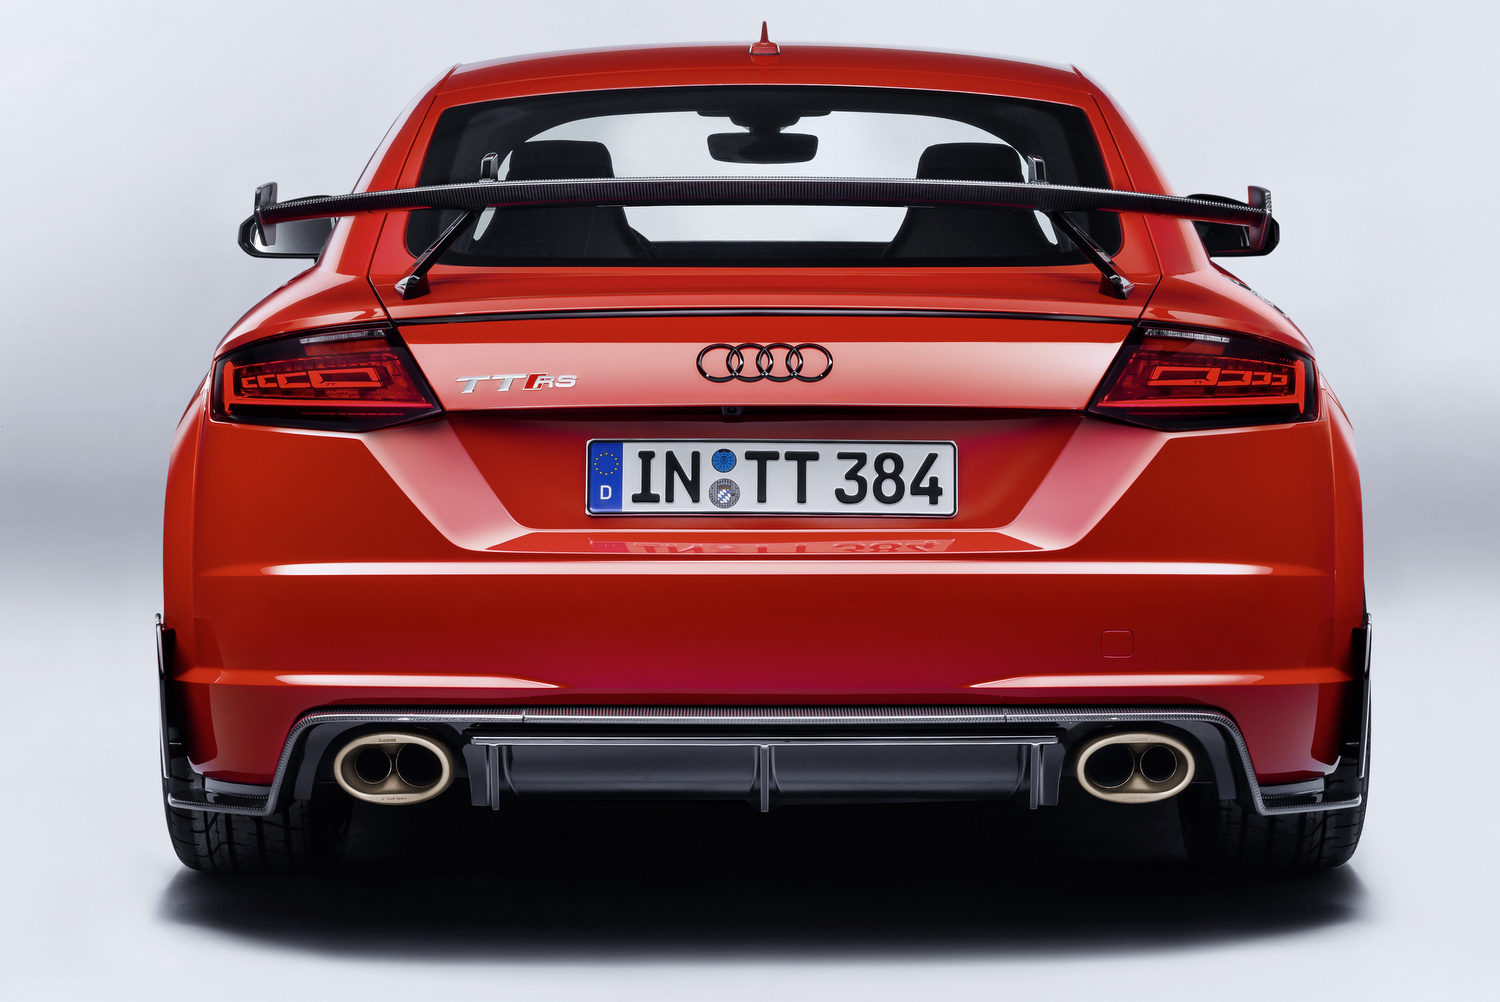 Audi Sport Performance alkatrészek az Audi R8 és Audi TT modellekhez 41